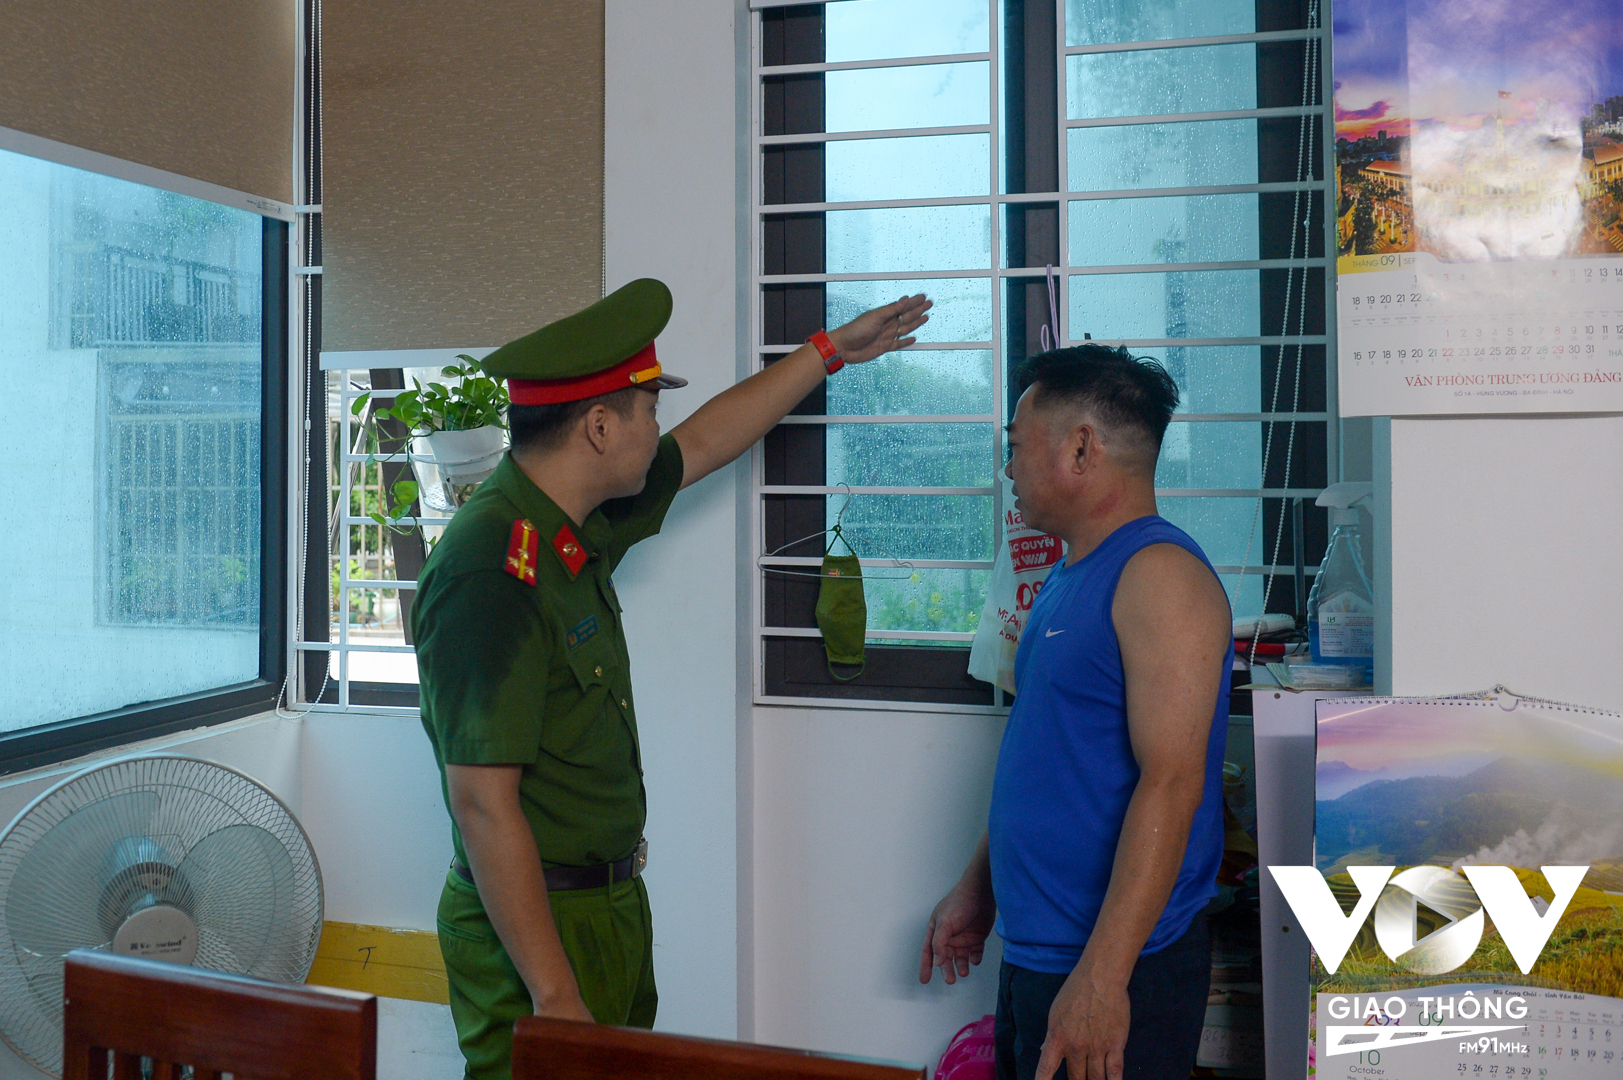 Cán bộ Đội Cảnh sát PCCC & CNCH - Công an quận Ba Đình, Hà Nội hướng dẫn ông Nguyễn Xuân Thông nên bố trí thêm lối thoát nạn.